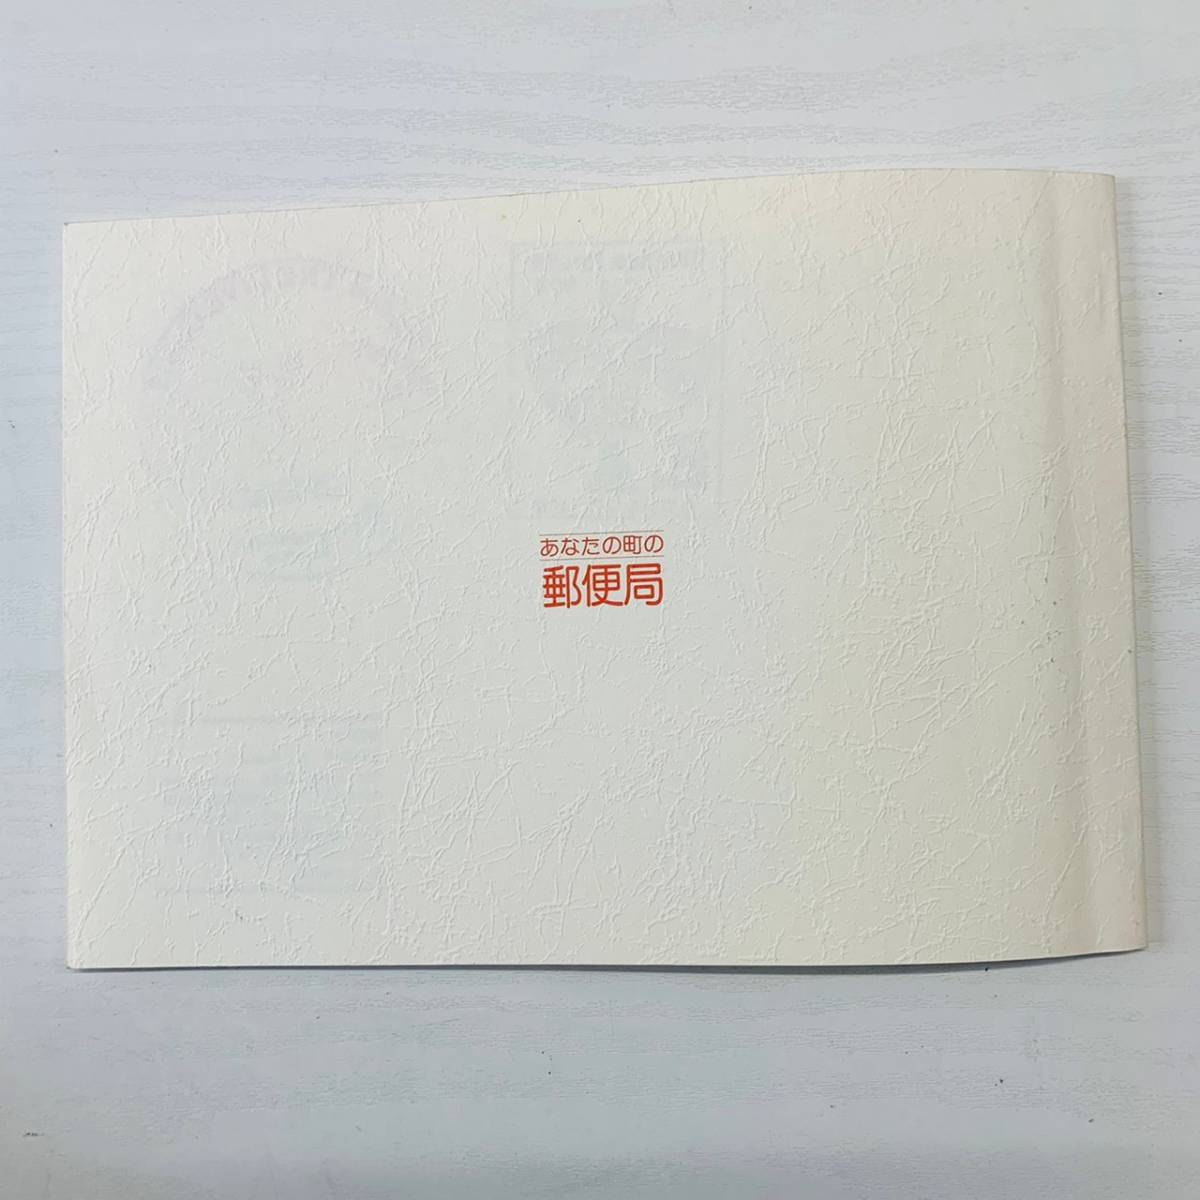 なら・シルクロード博記念 きり絵と切手で彩る 奈良の四季 〒630 奈良中央郵便局_画像10